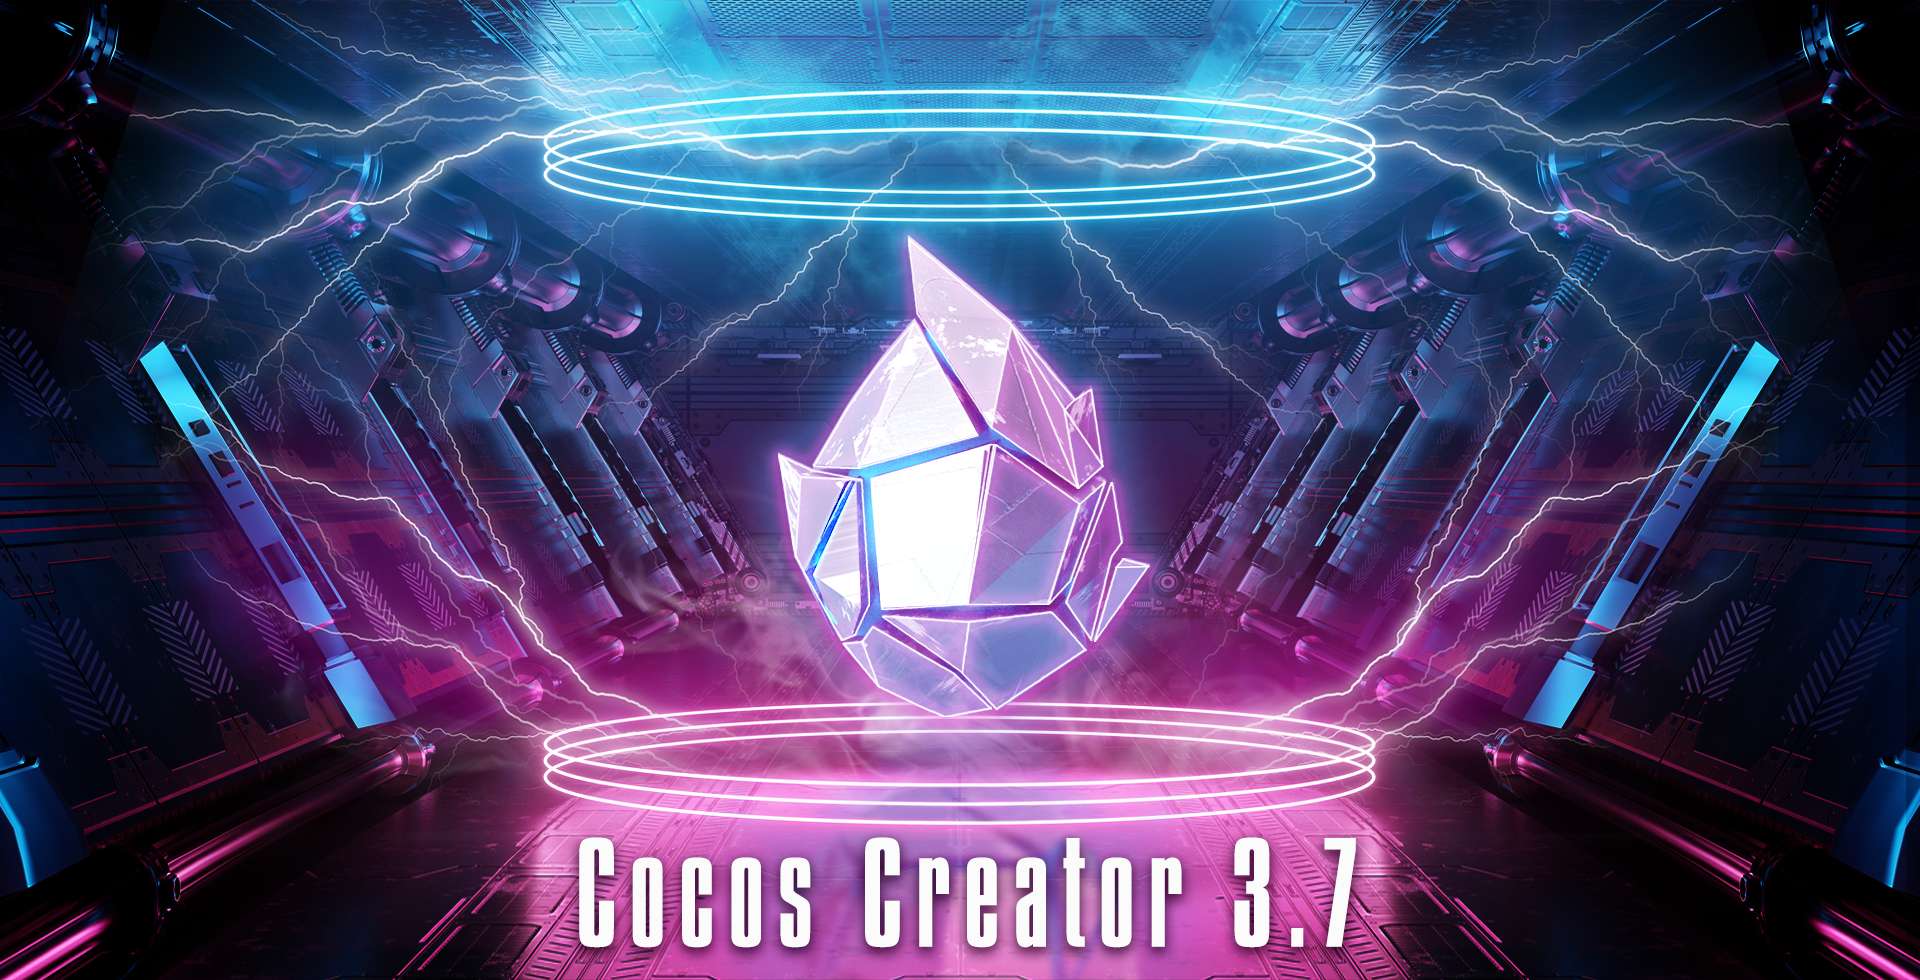 Cocos Creator 3.7.0 Brings More Improvements